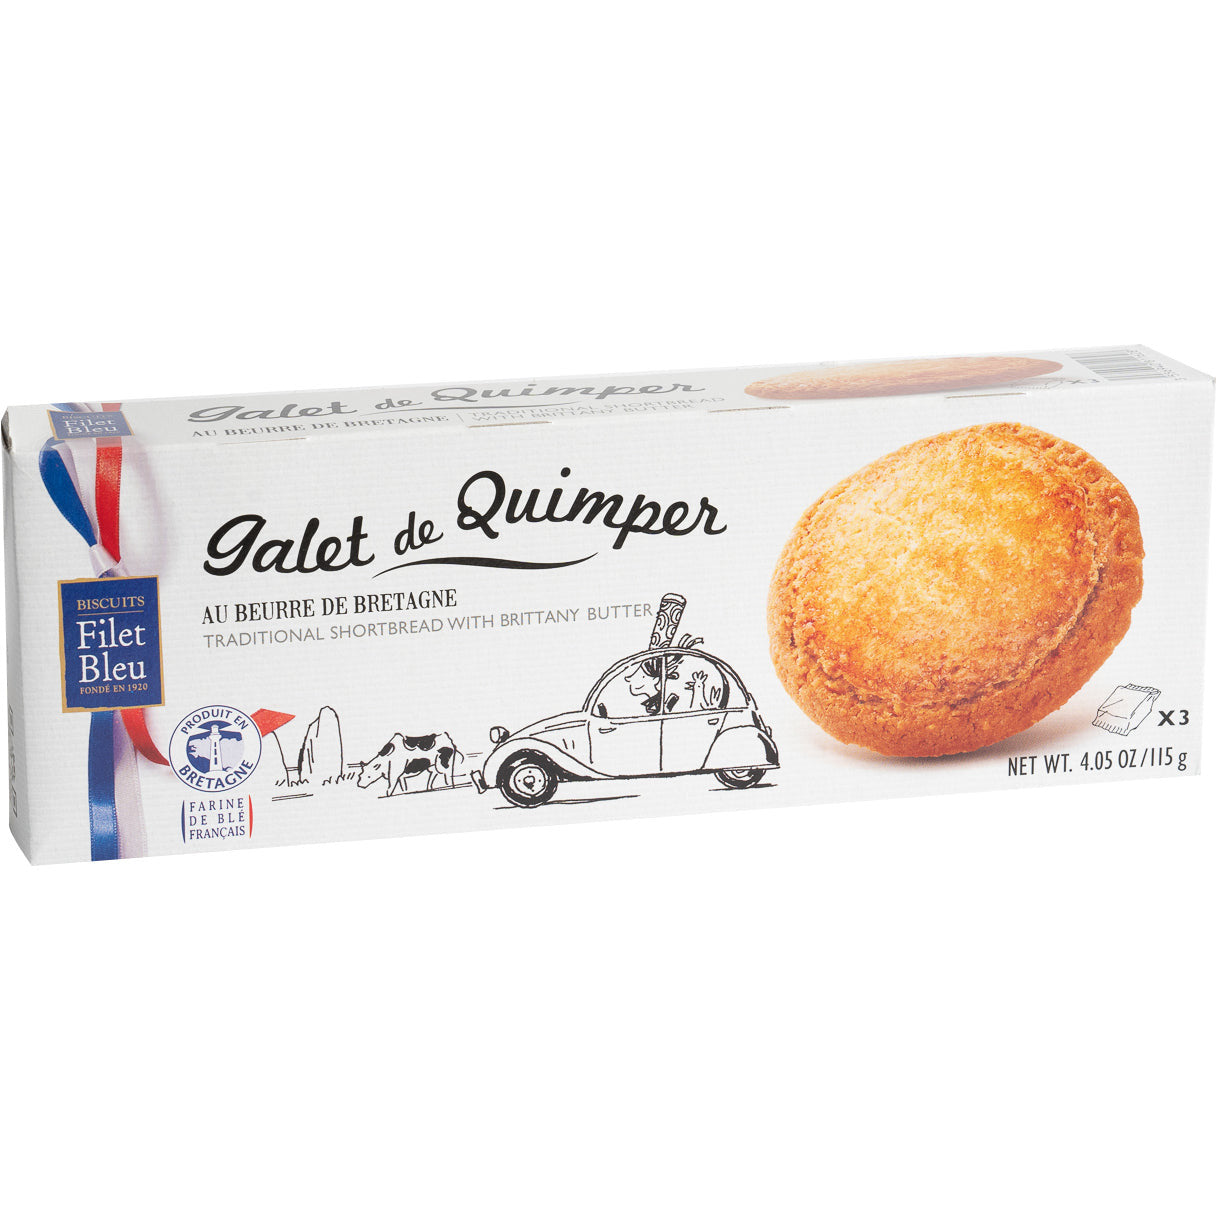 Biscuits au beurre français (Galet de Quimper)